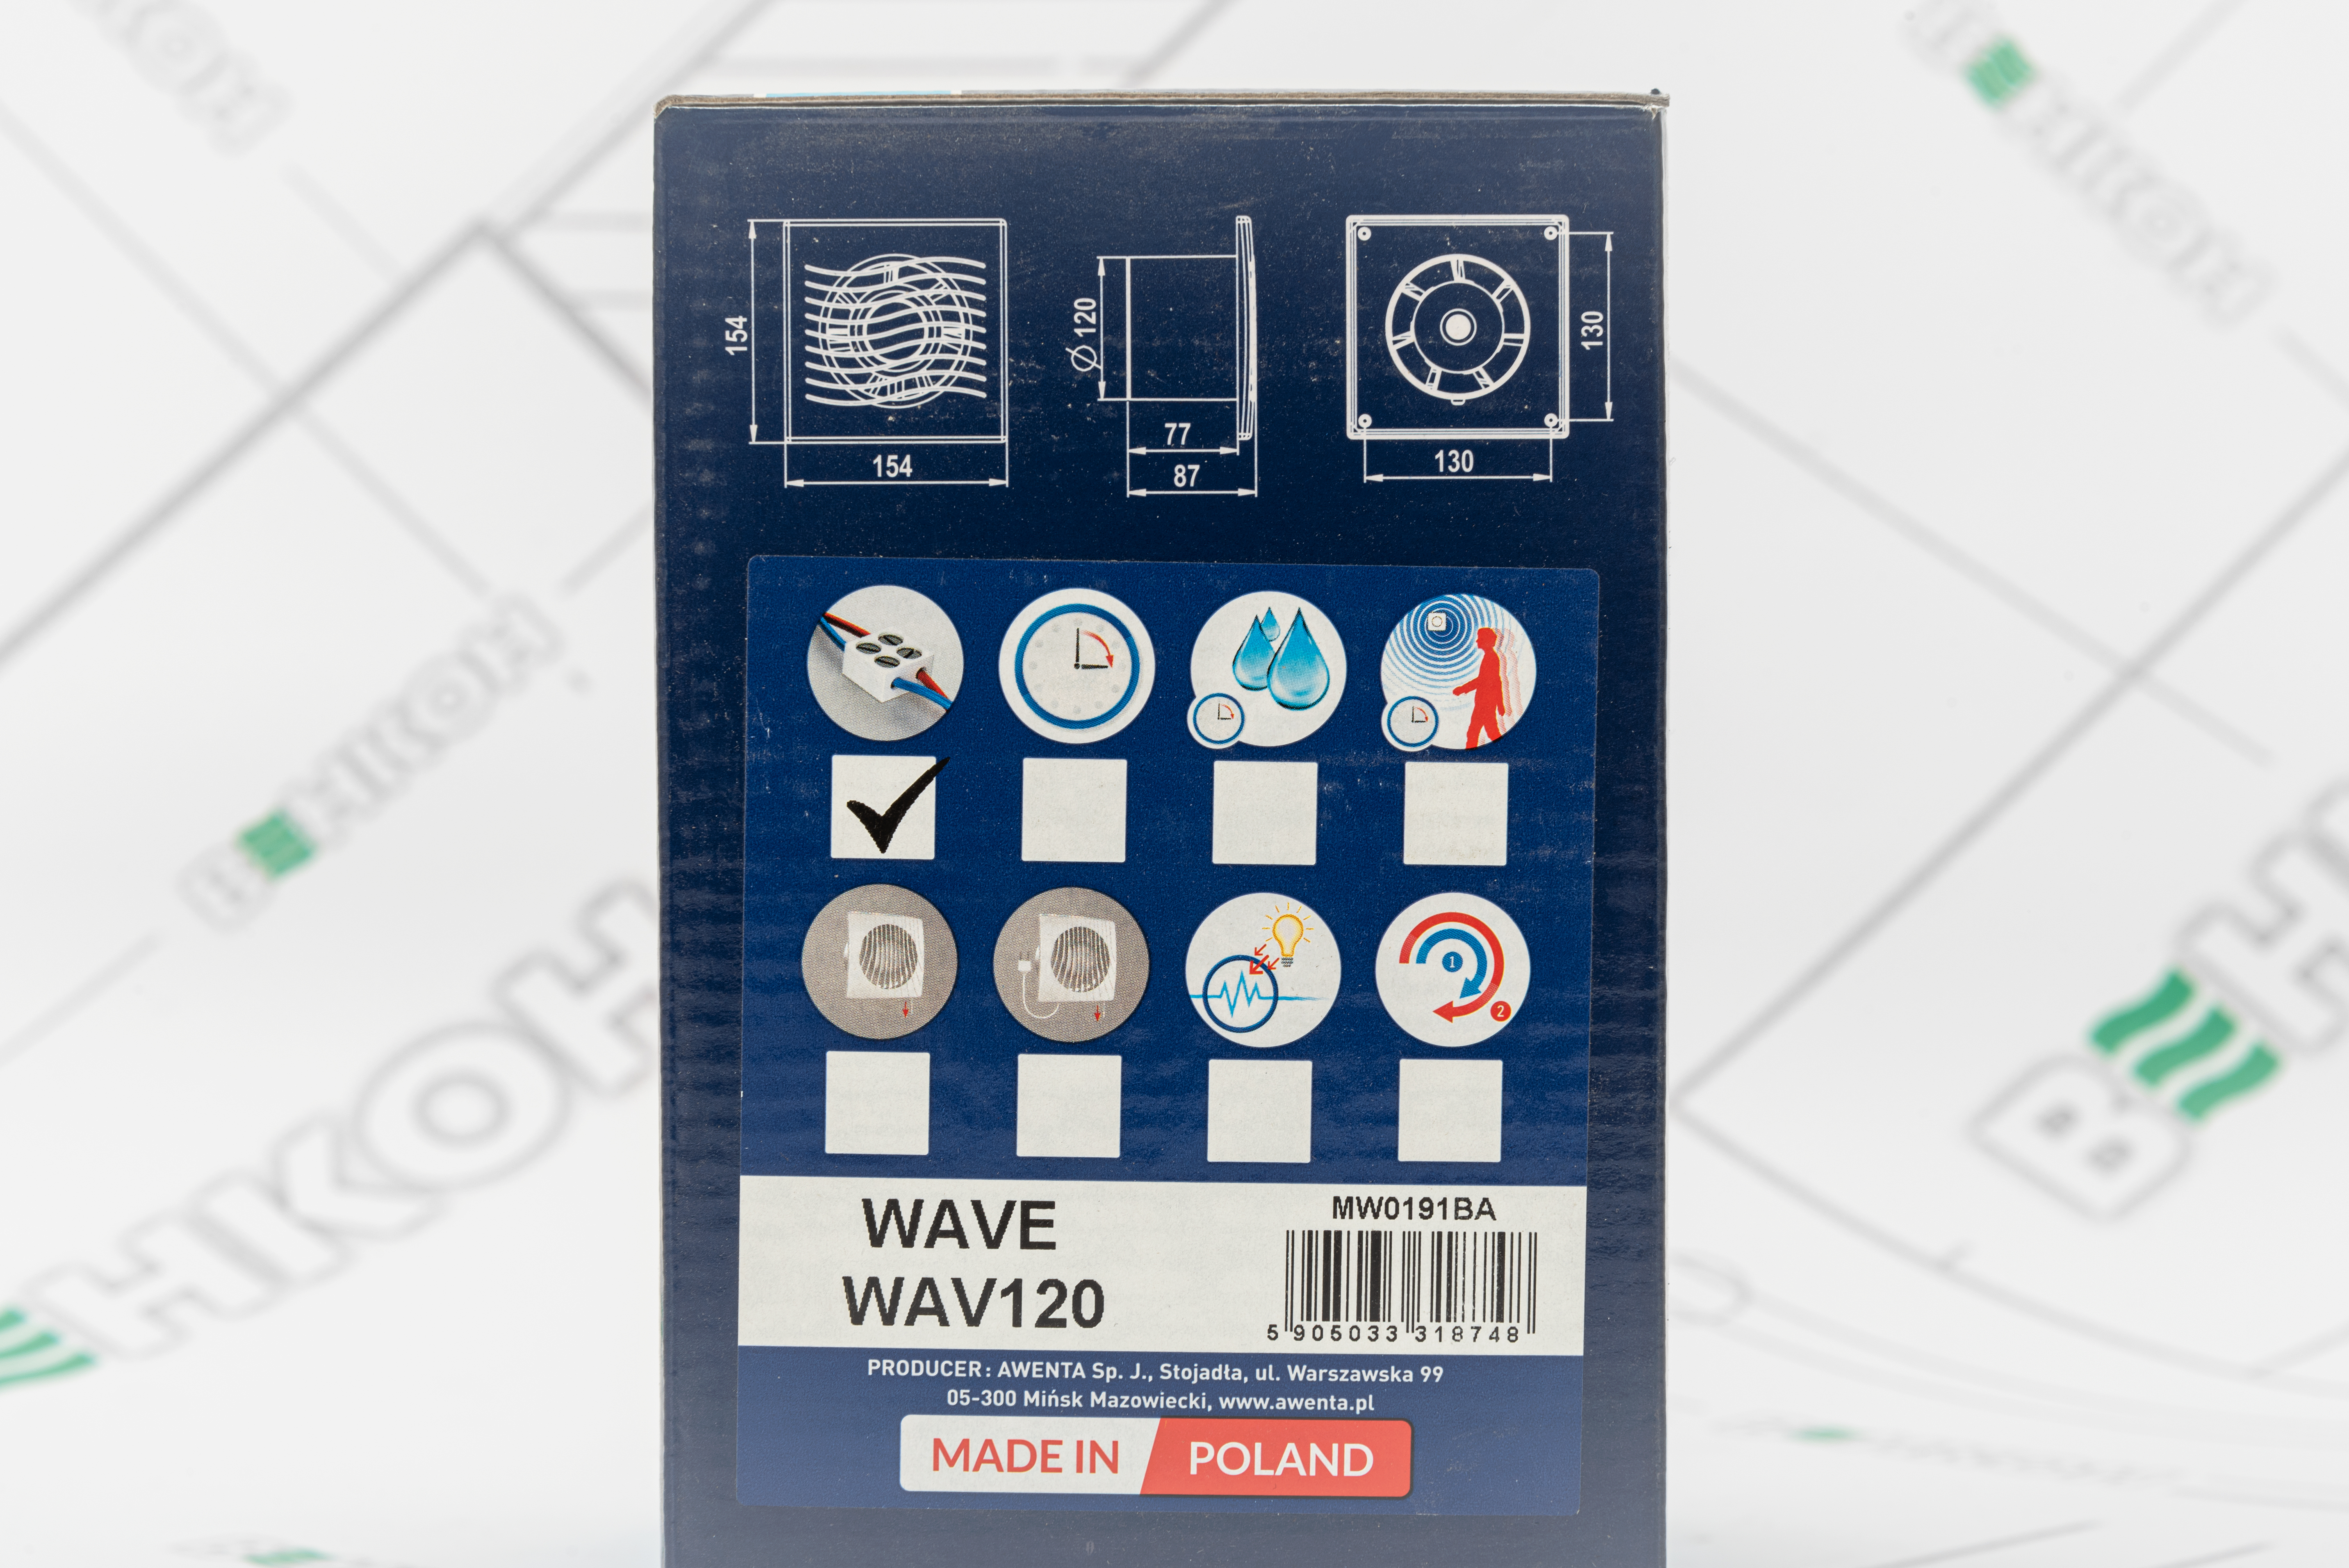 Вытяжной вентилятор Awenta Wave WAV120 внешний вид - фото 9